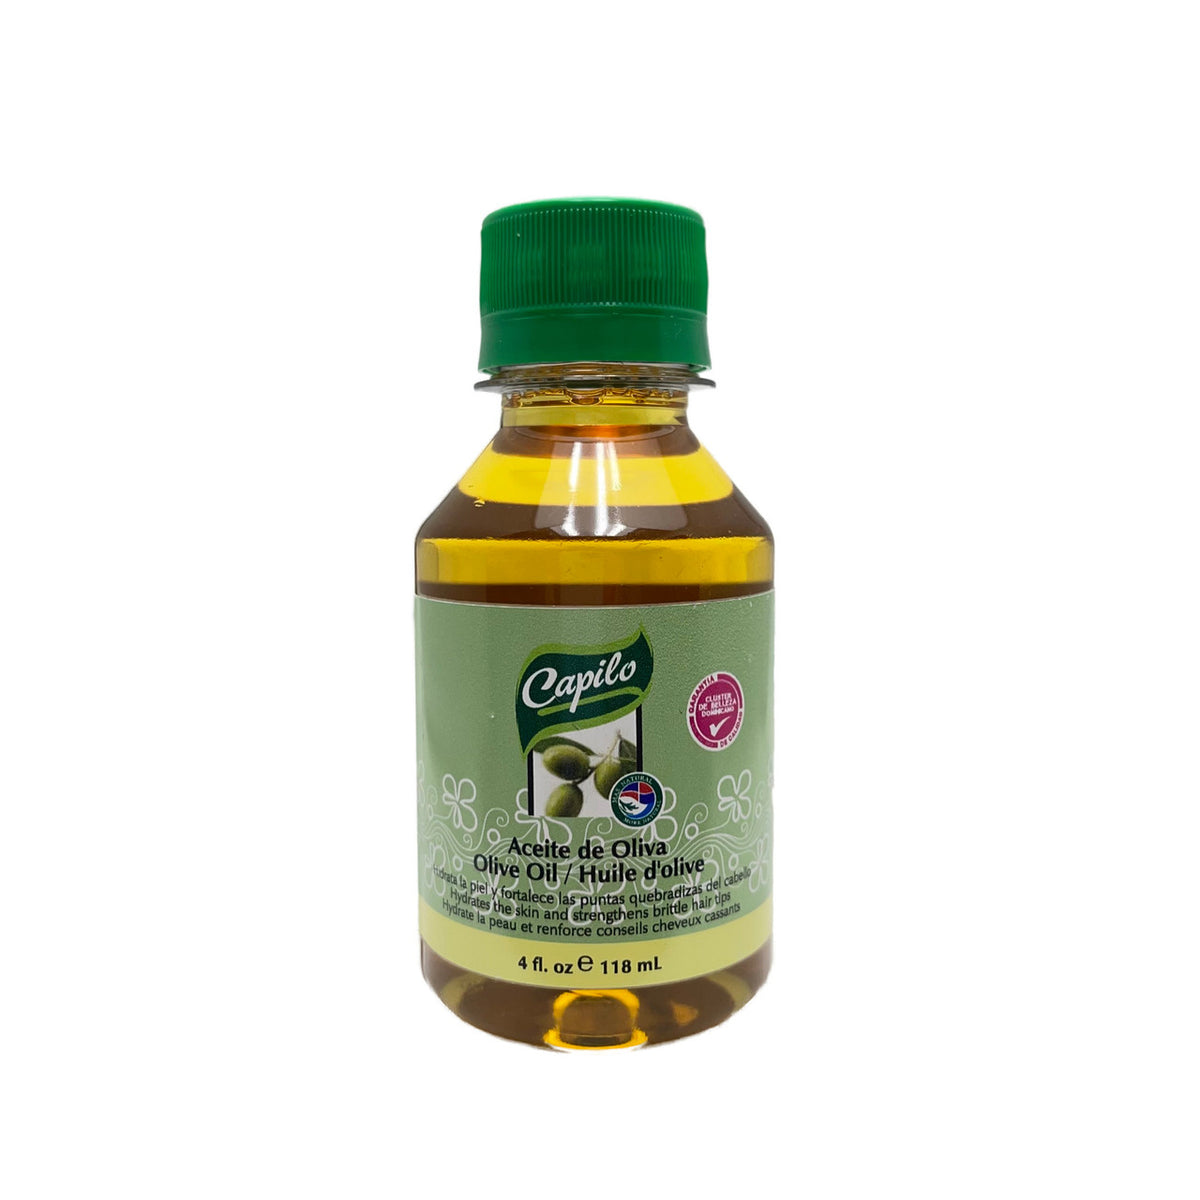 Capilo Aceite de Oliva/ Olive Oil 4 fl. oz